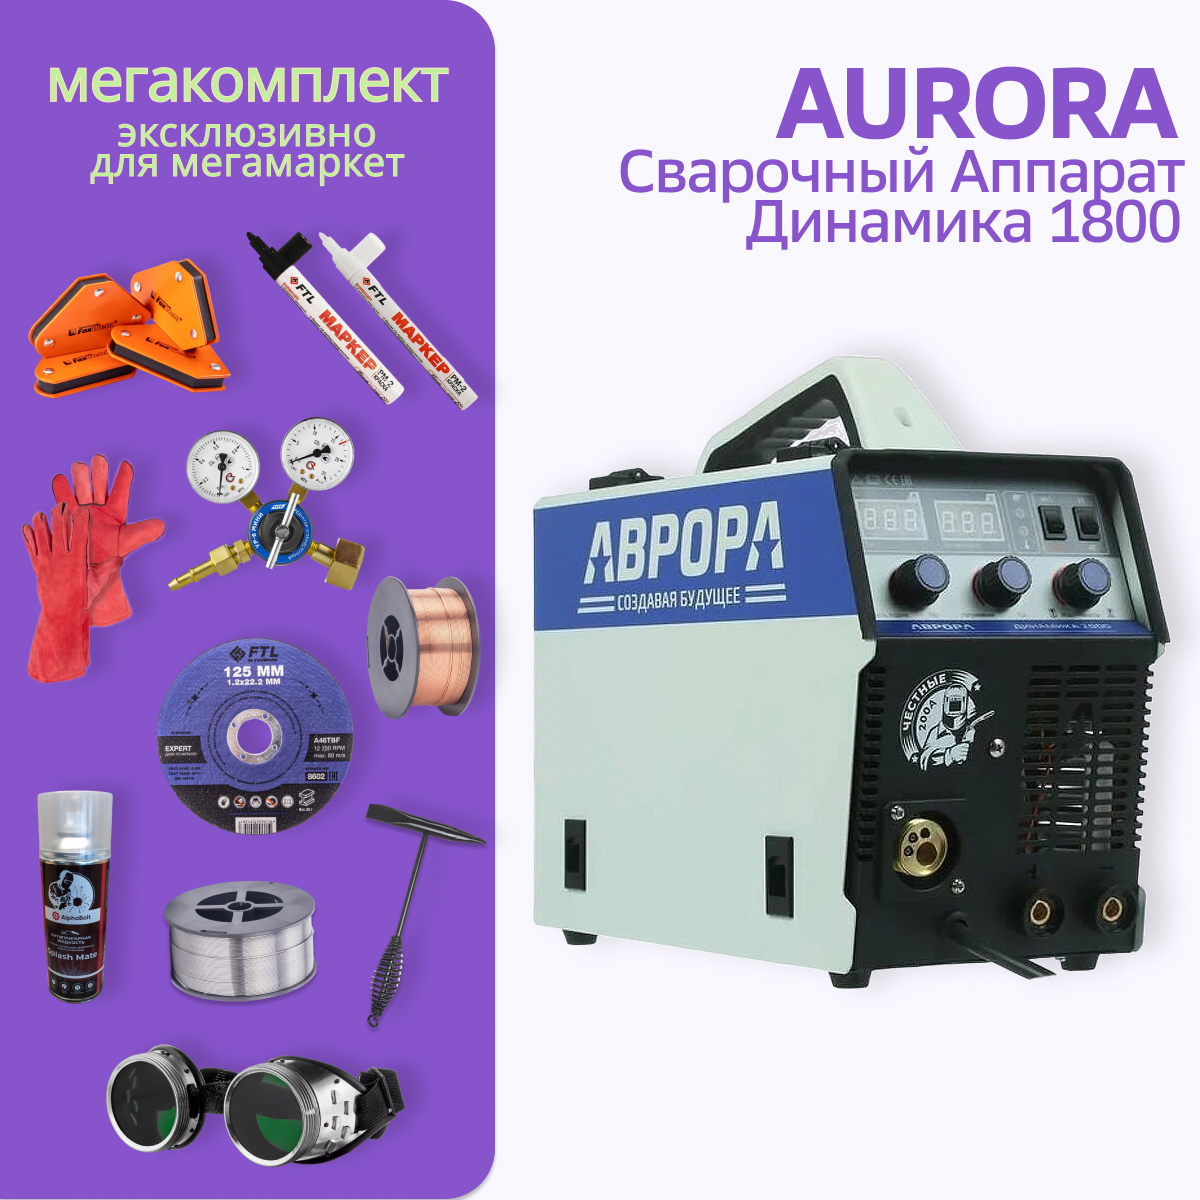 фото Сварочный полуавтомат аврора динамика 1800 мега комплект aurora